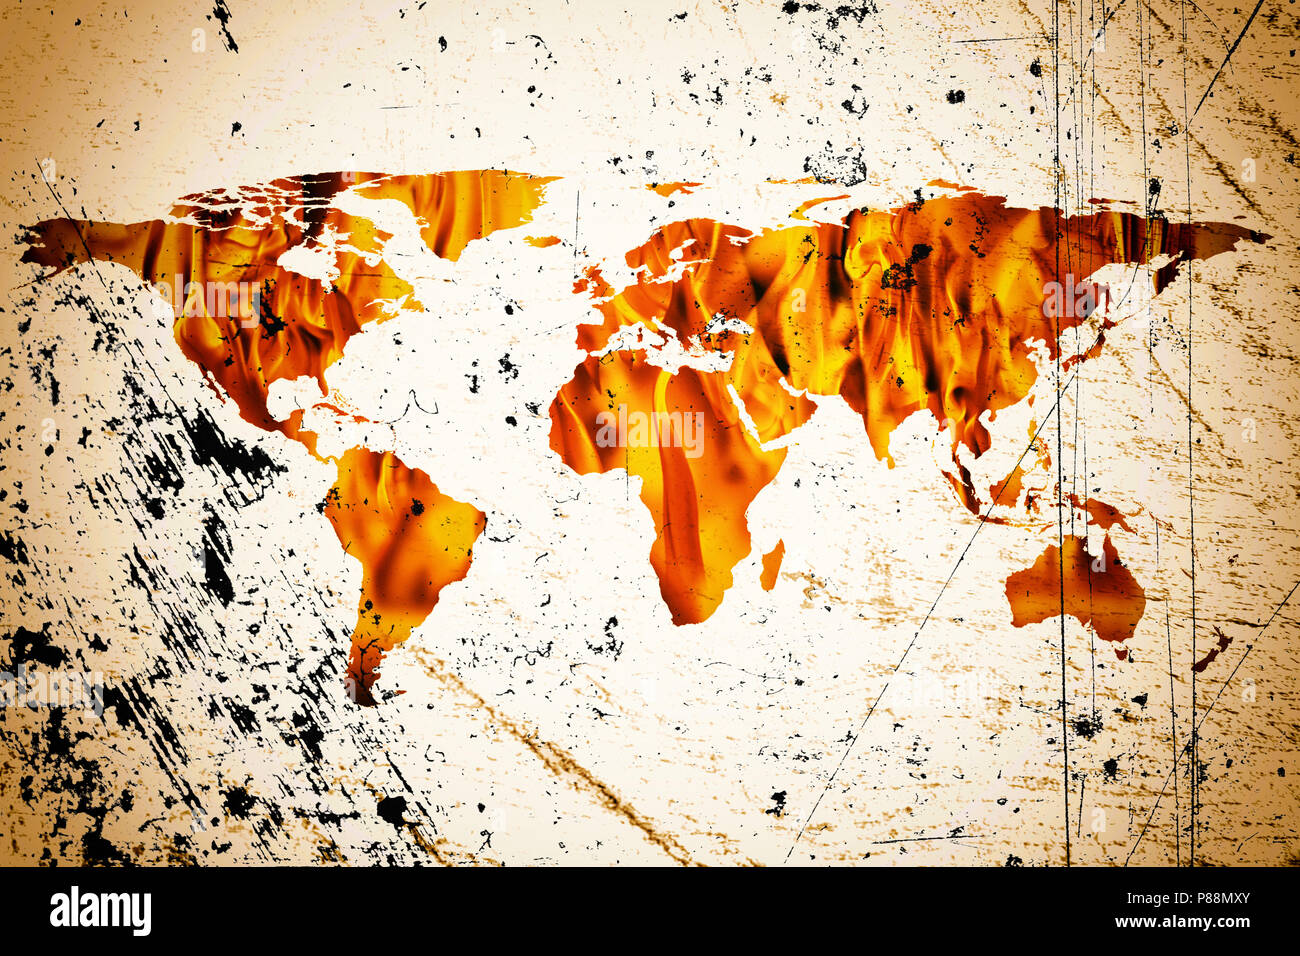 Immagine concettuale del mondo piatto mappa e fiamme di fuoco. La NASA mappa piatta del mondo immagine utilizzata per arredare questa immagine. Foto Stock